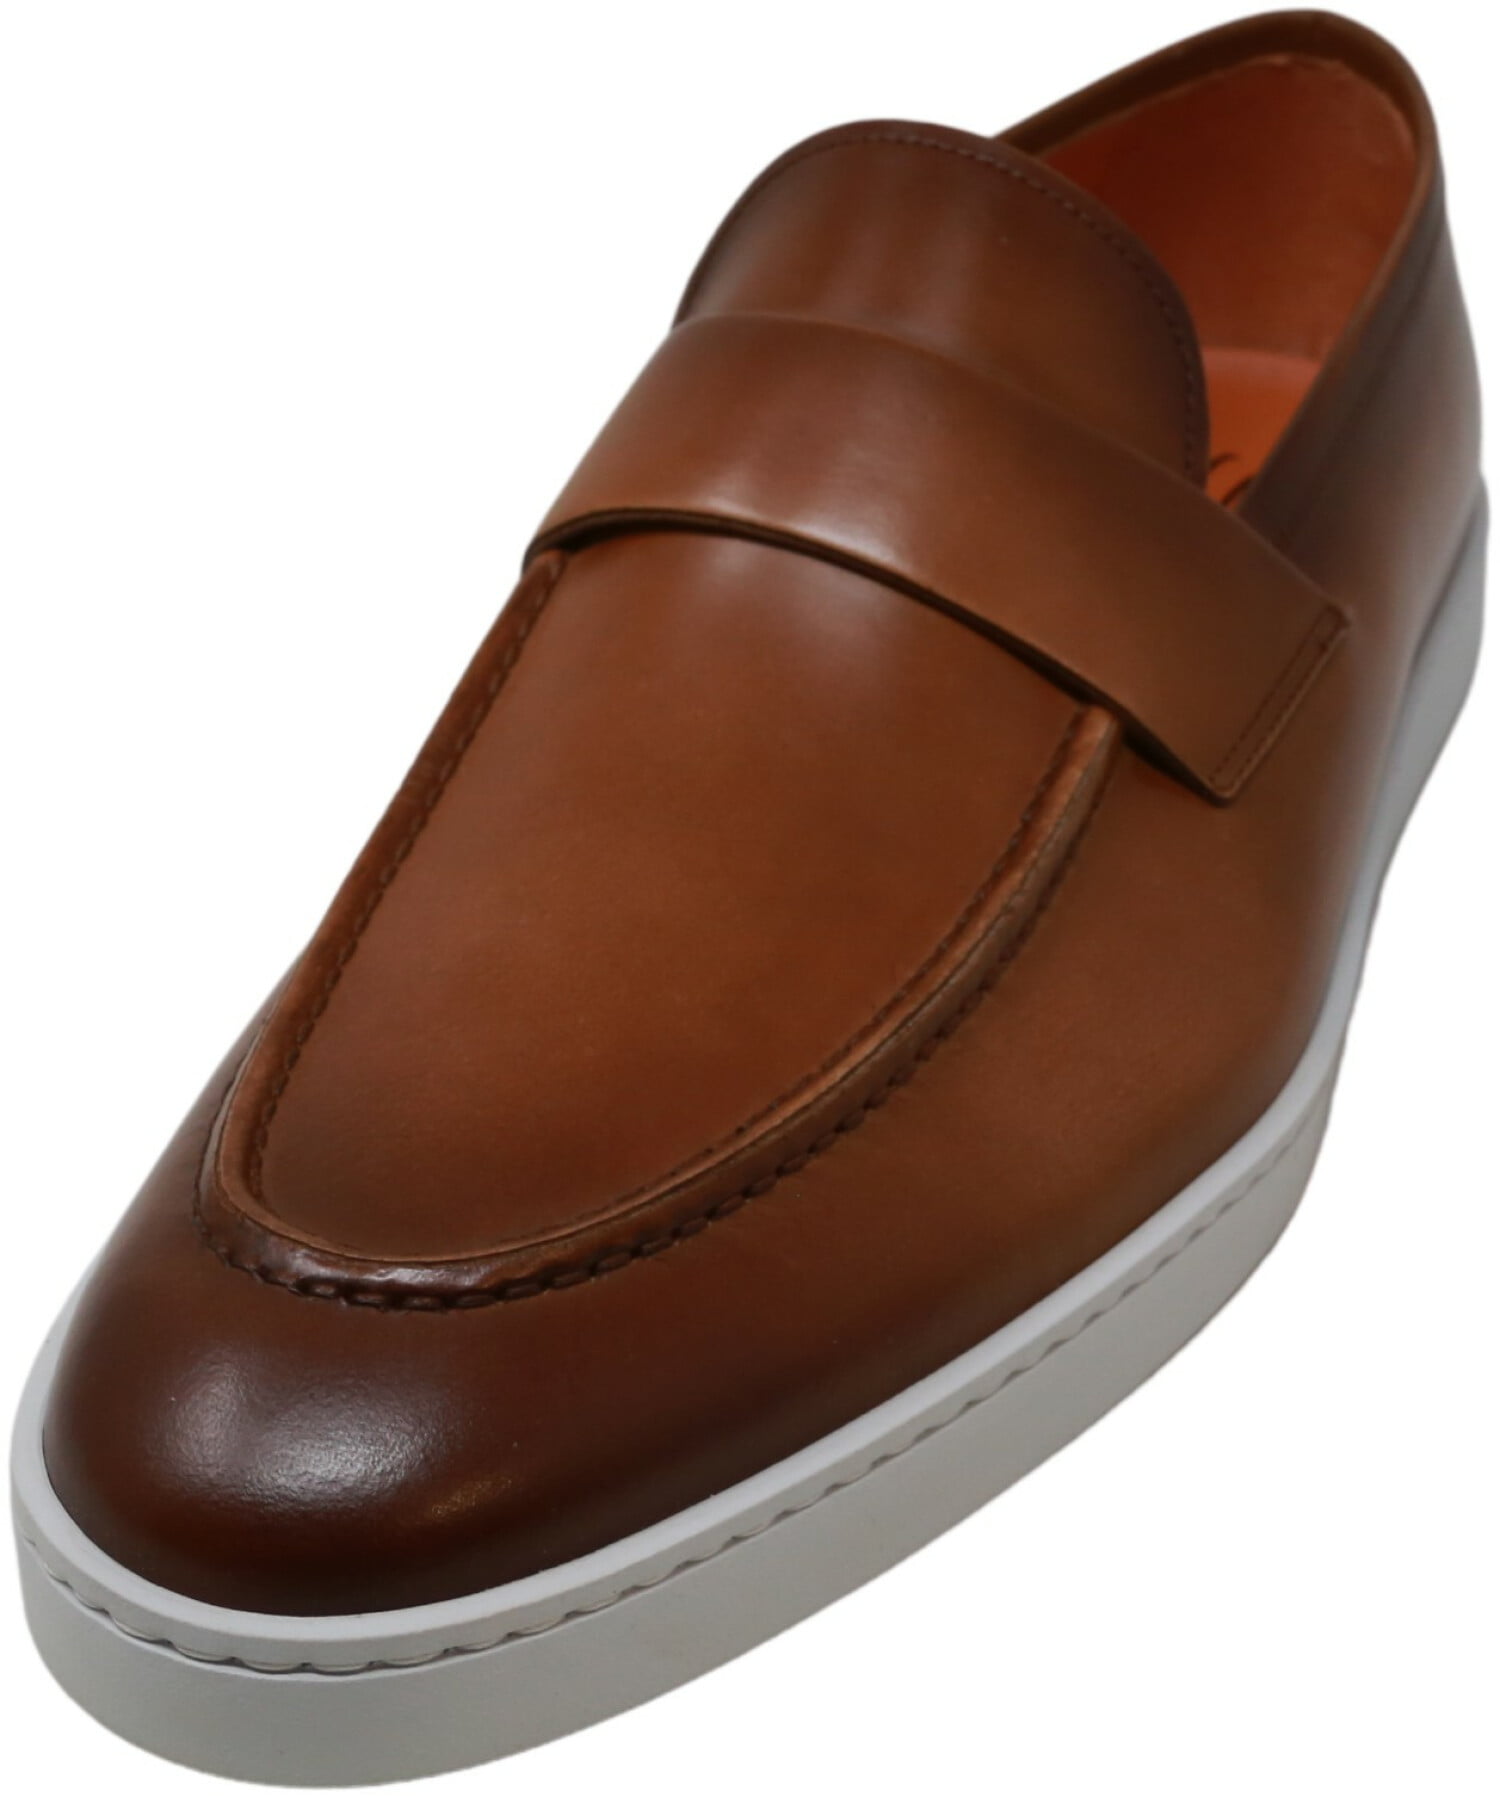 santoni leather loafers